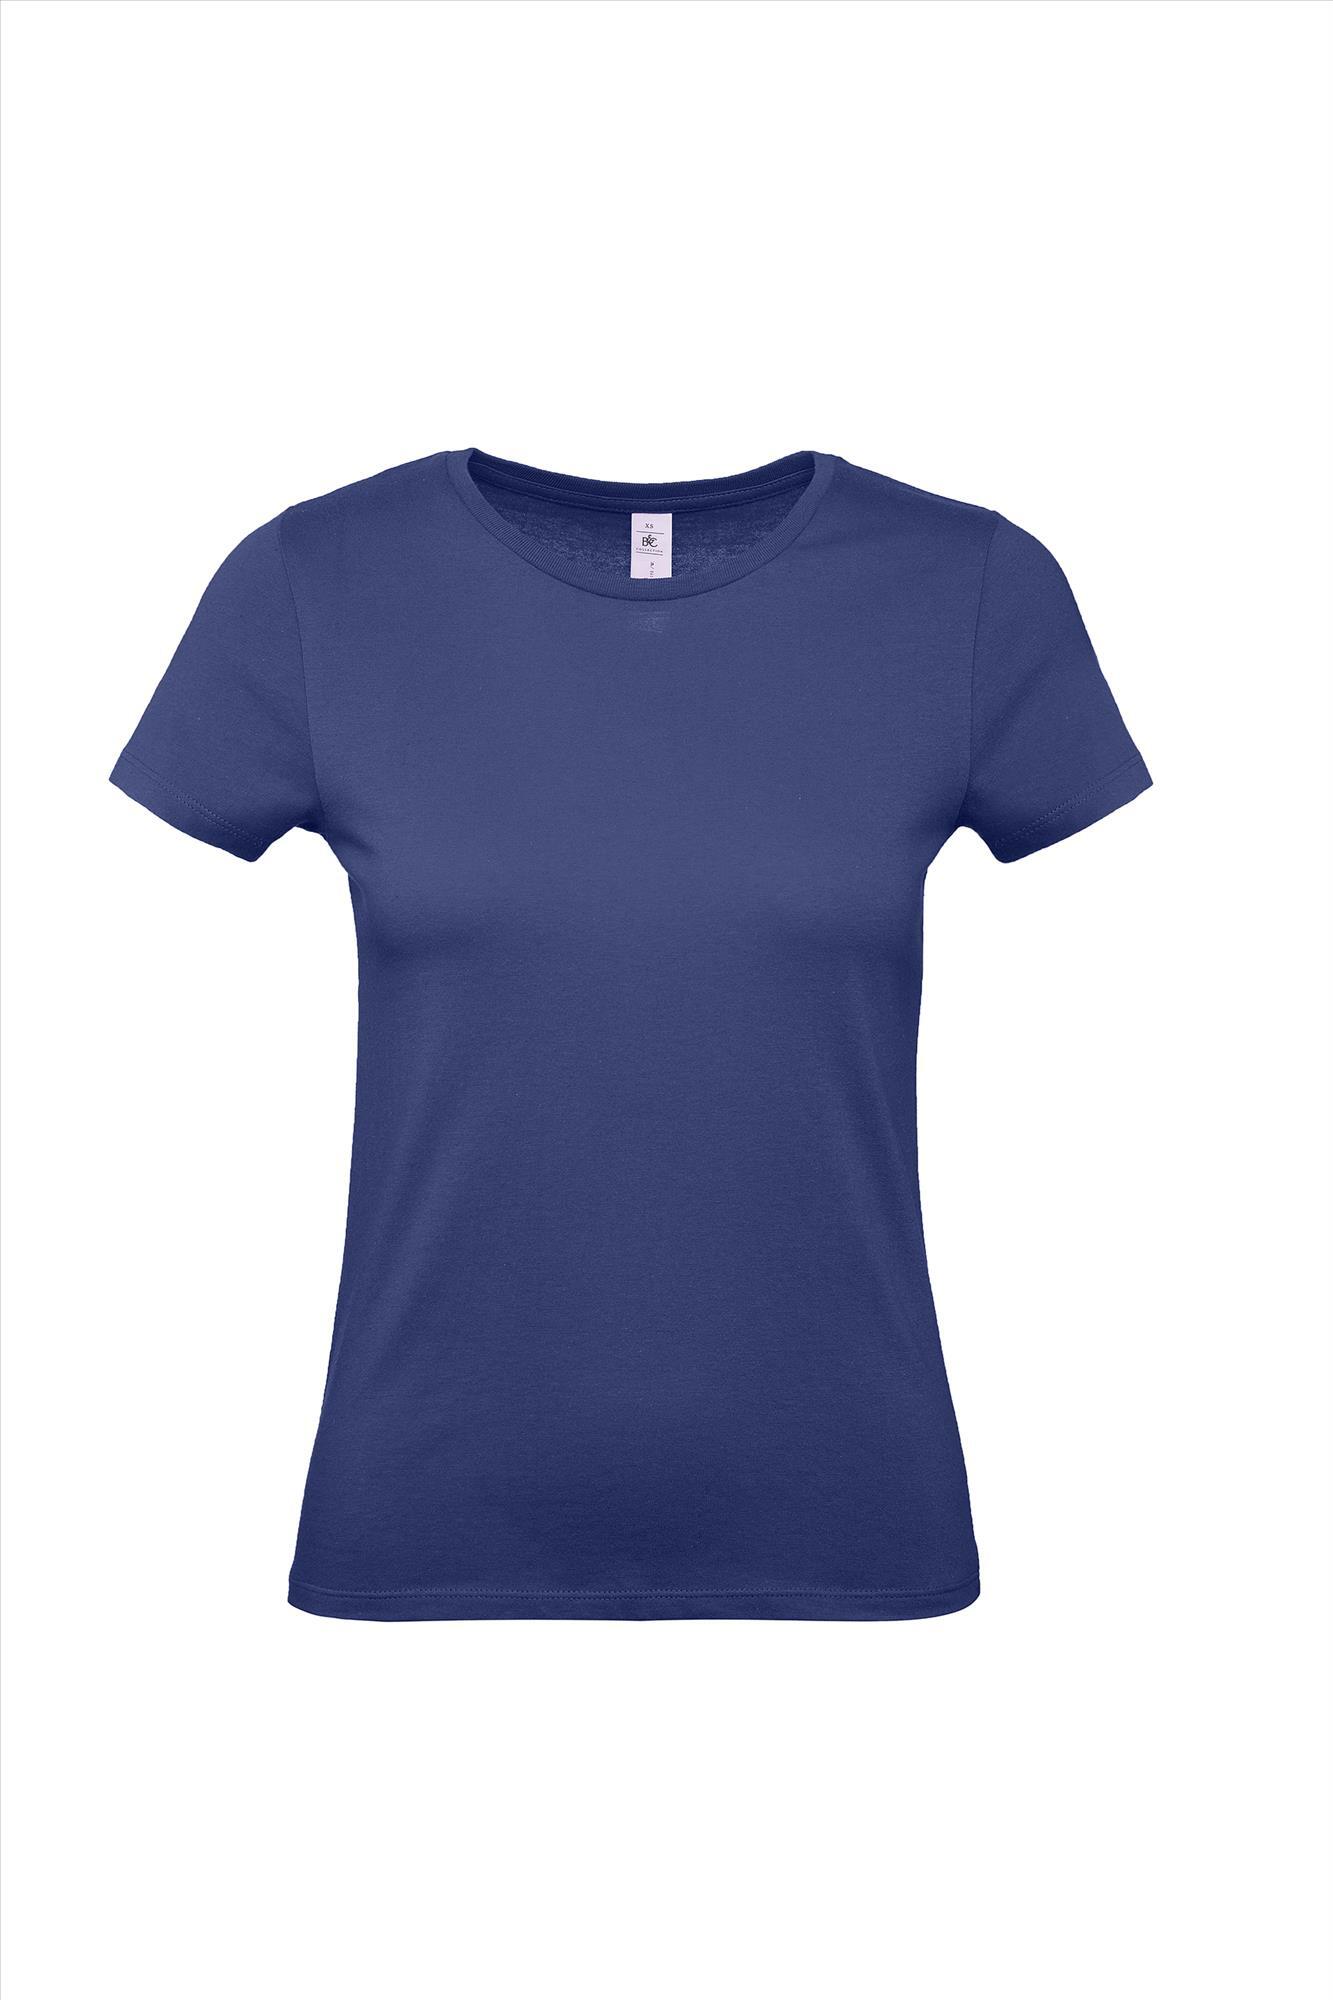 Modern T-shirt voor haar dames shirt blauw